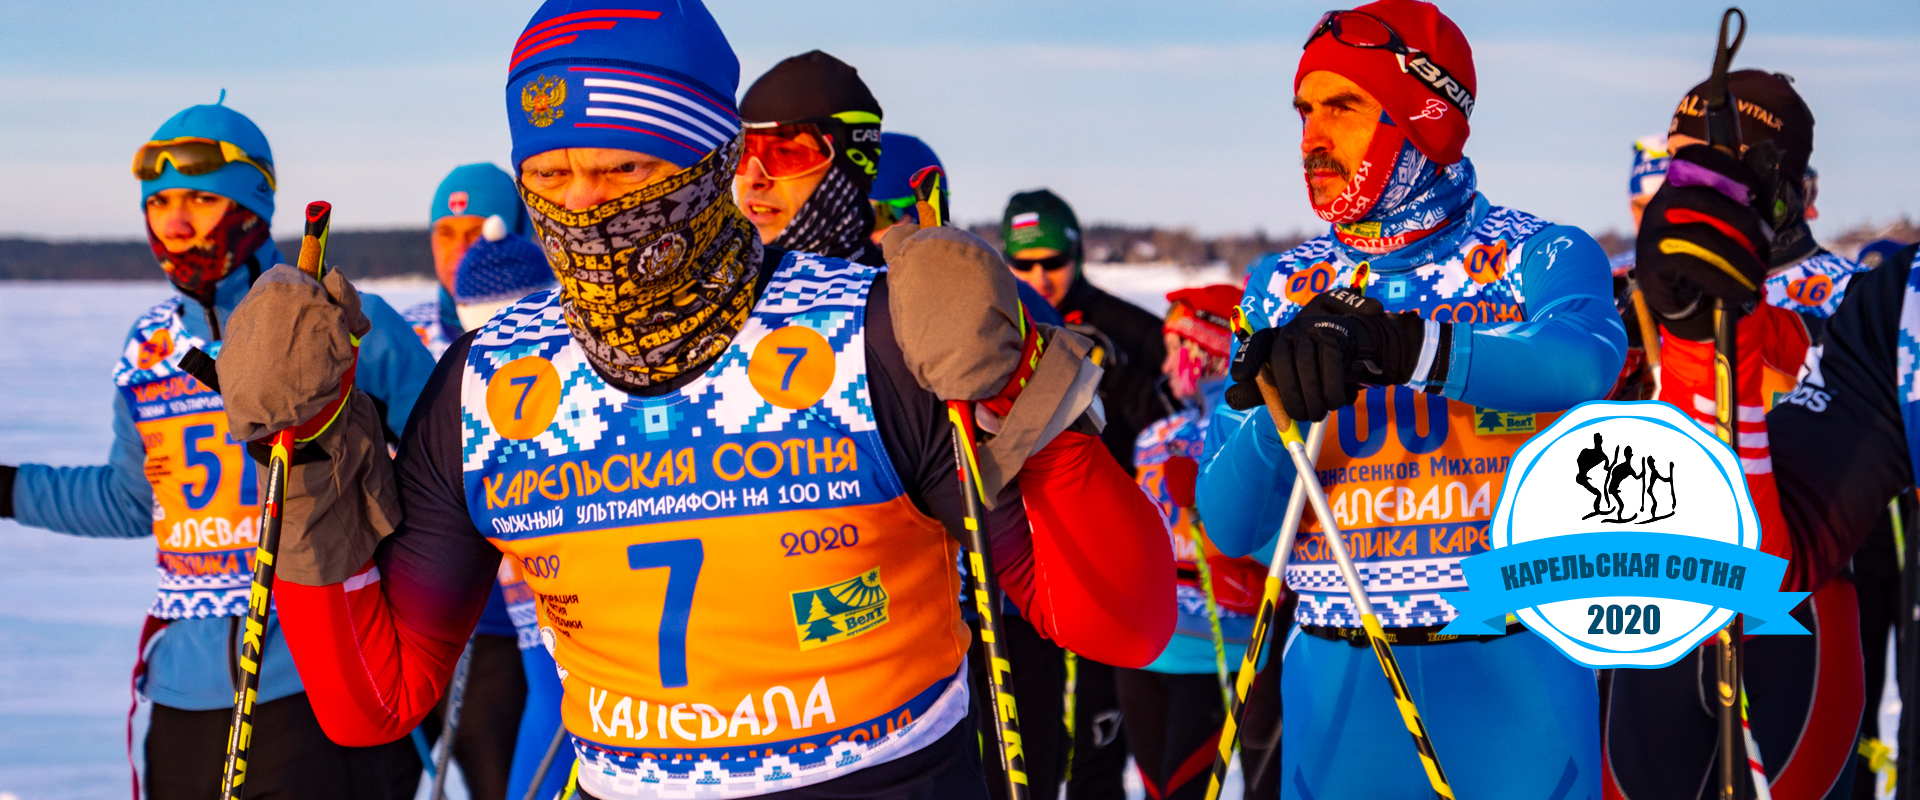 лыжная гонка Карельская сотня 2020 в Калевале